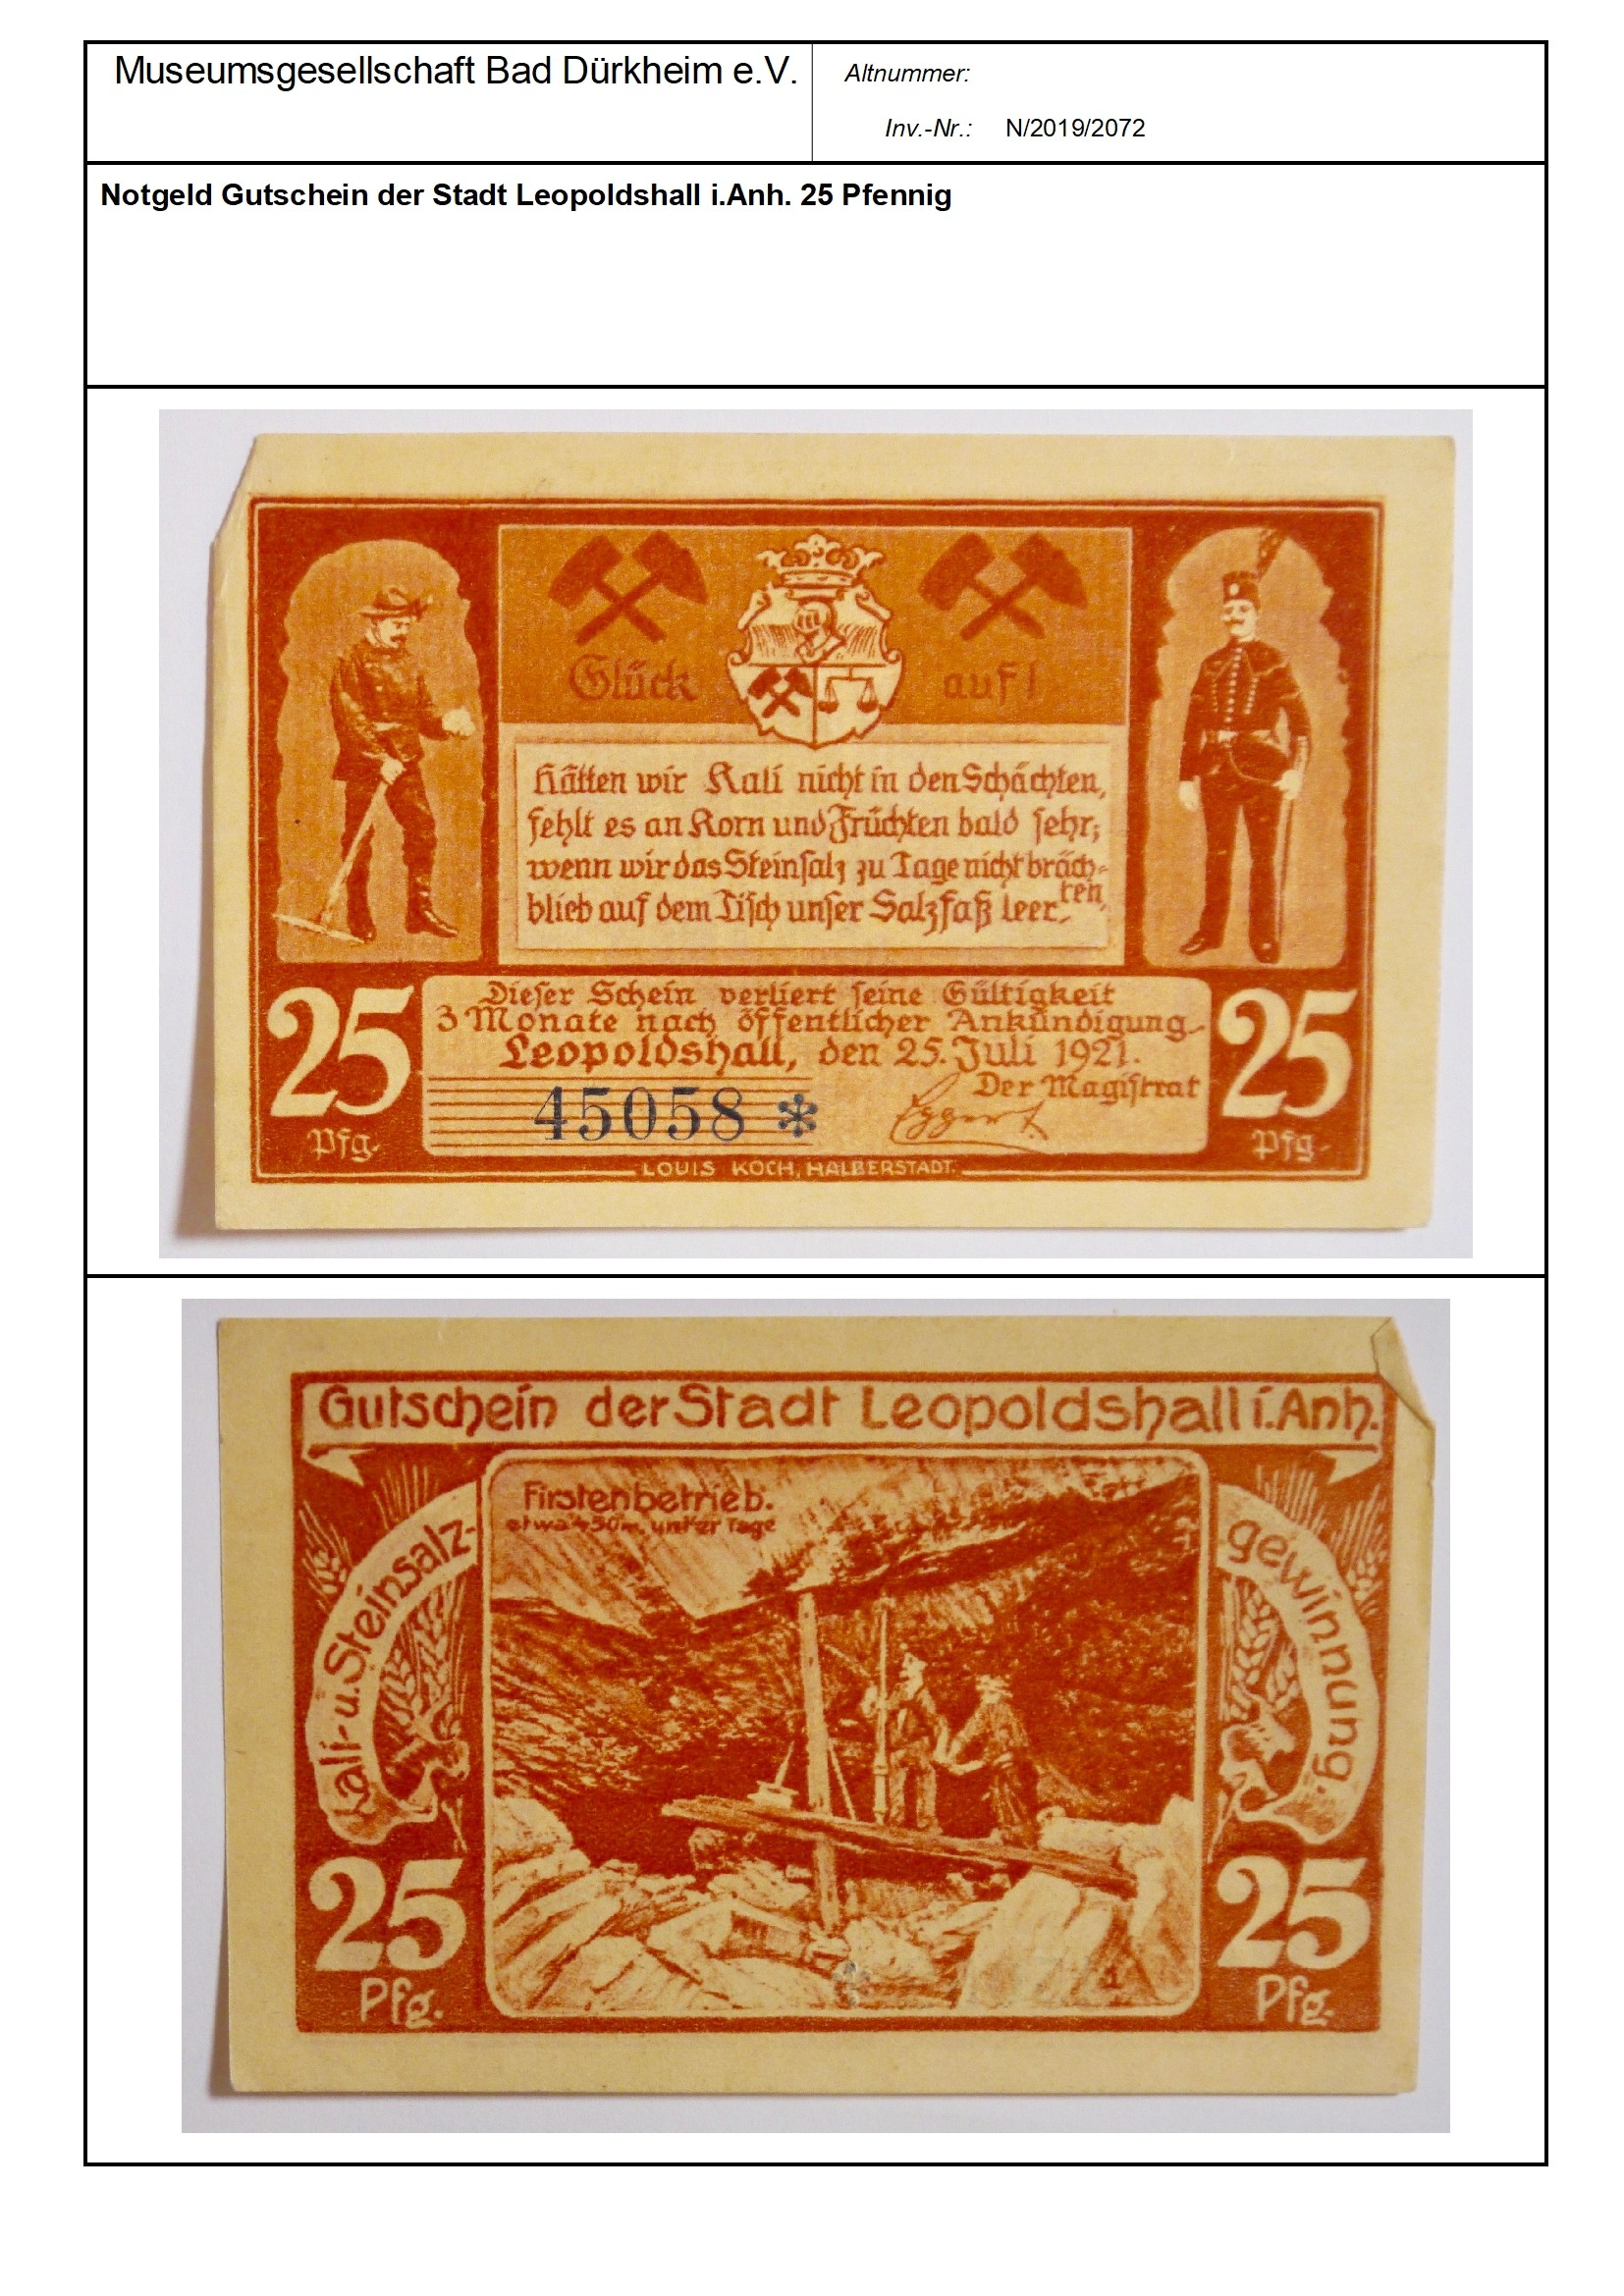 Notgeld Gutschein der Stadt Leopoldshall i.Anh. 25 Pfennig
Serien-Nummer: 45058 * (Museumsgesellschaft Bad Dürkheim e.V. CC BY-NC-SA)